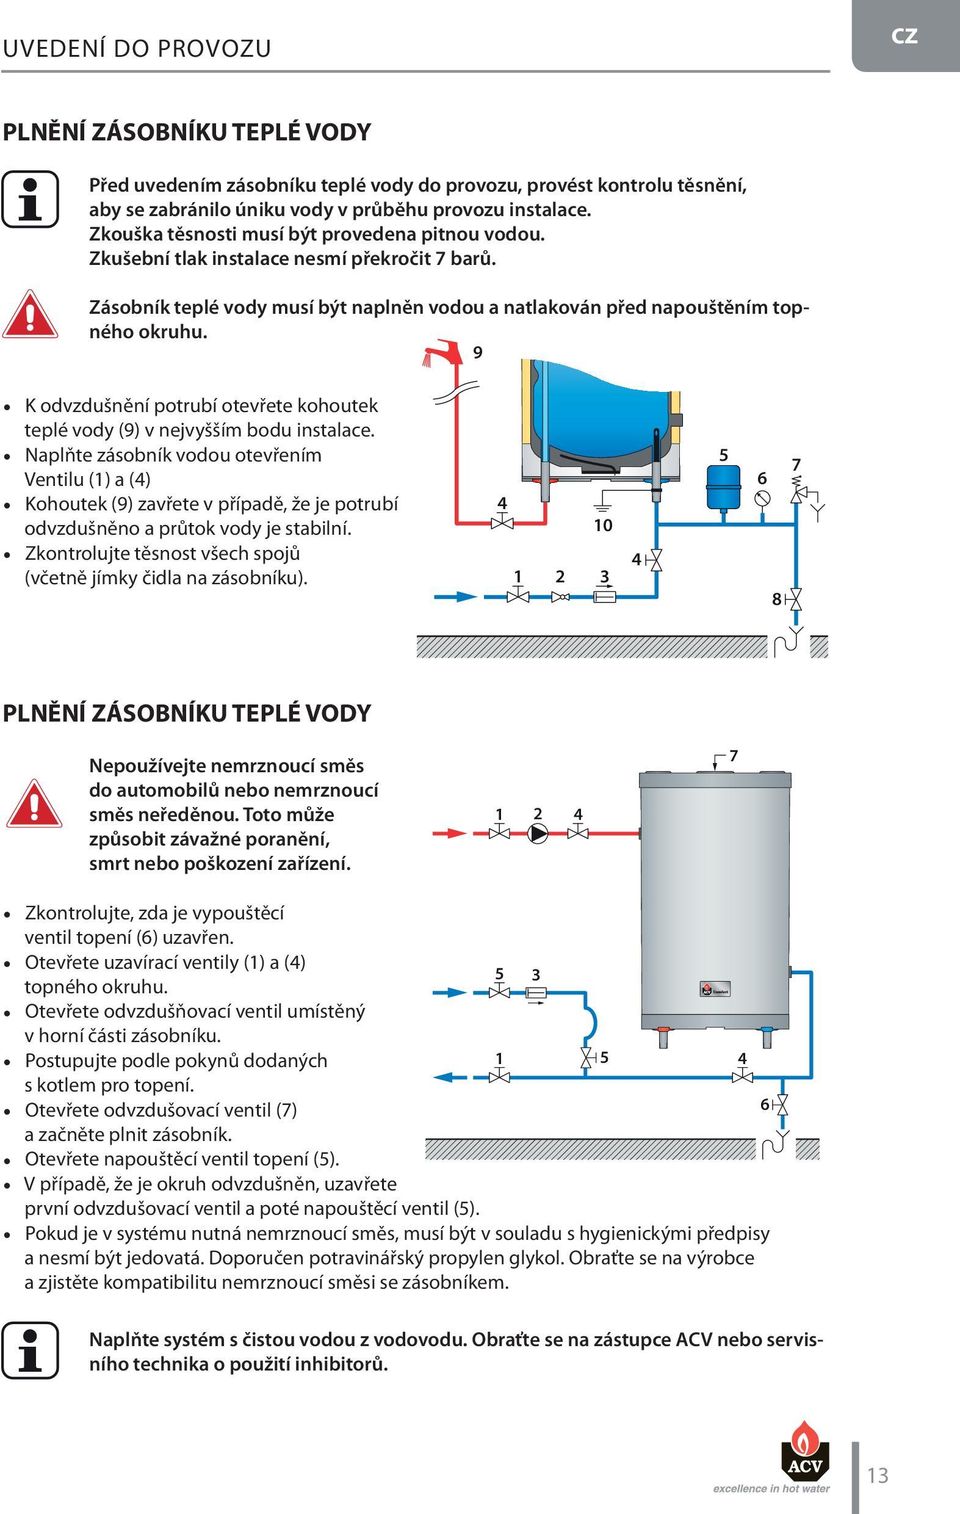 9 K odvzdušnění potrubí otevřete kohoutek teplé vody (9) v nejvyšším bodu instalace.